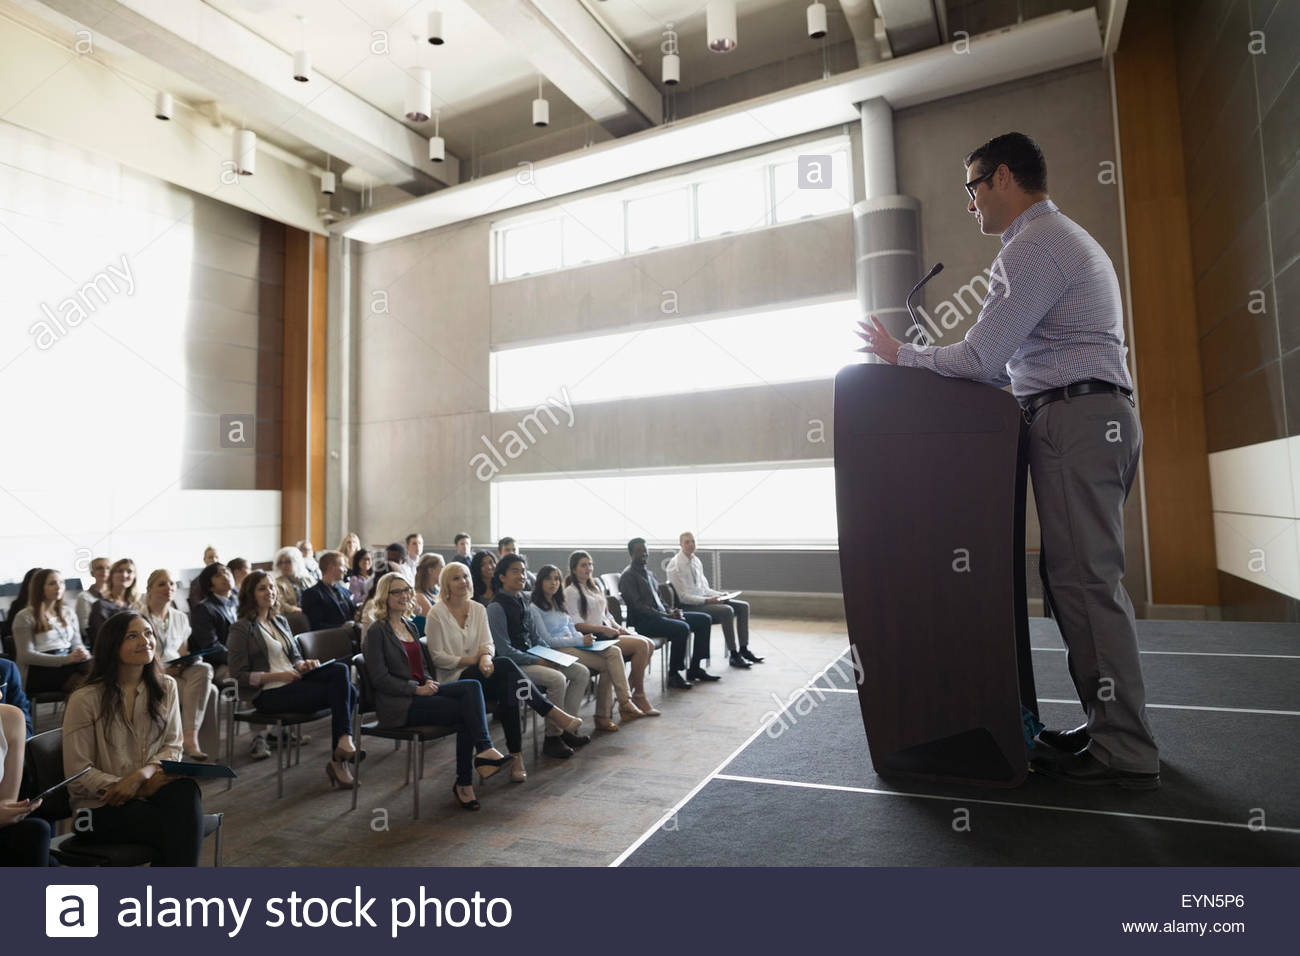 Professor at podium speaking to students in auditorium Stock Photo